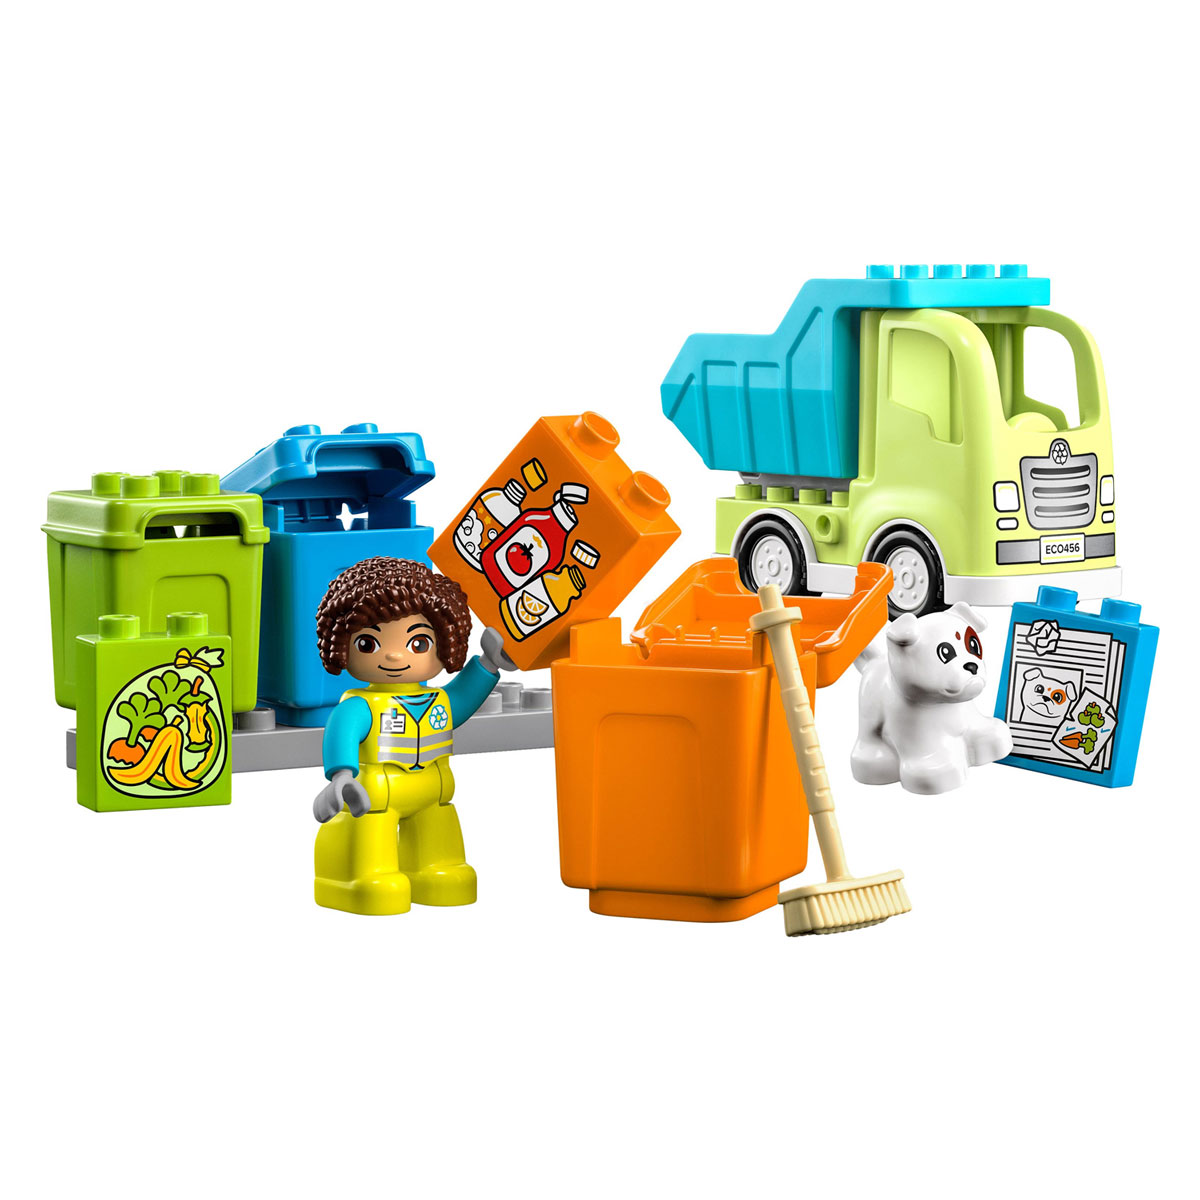 LEGO Duplo Town 10987 Le camion poubelle